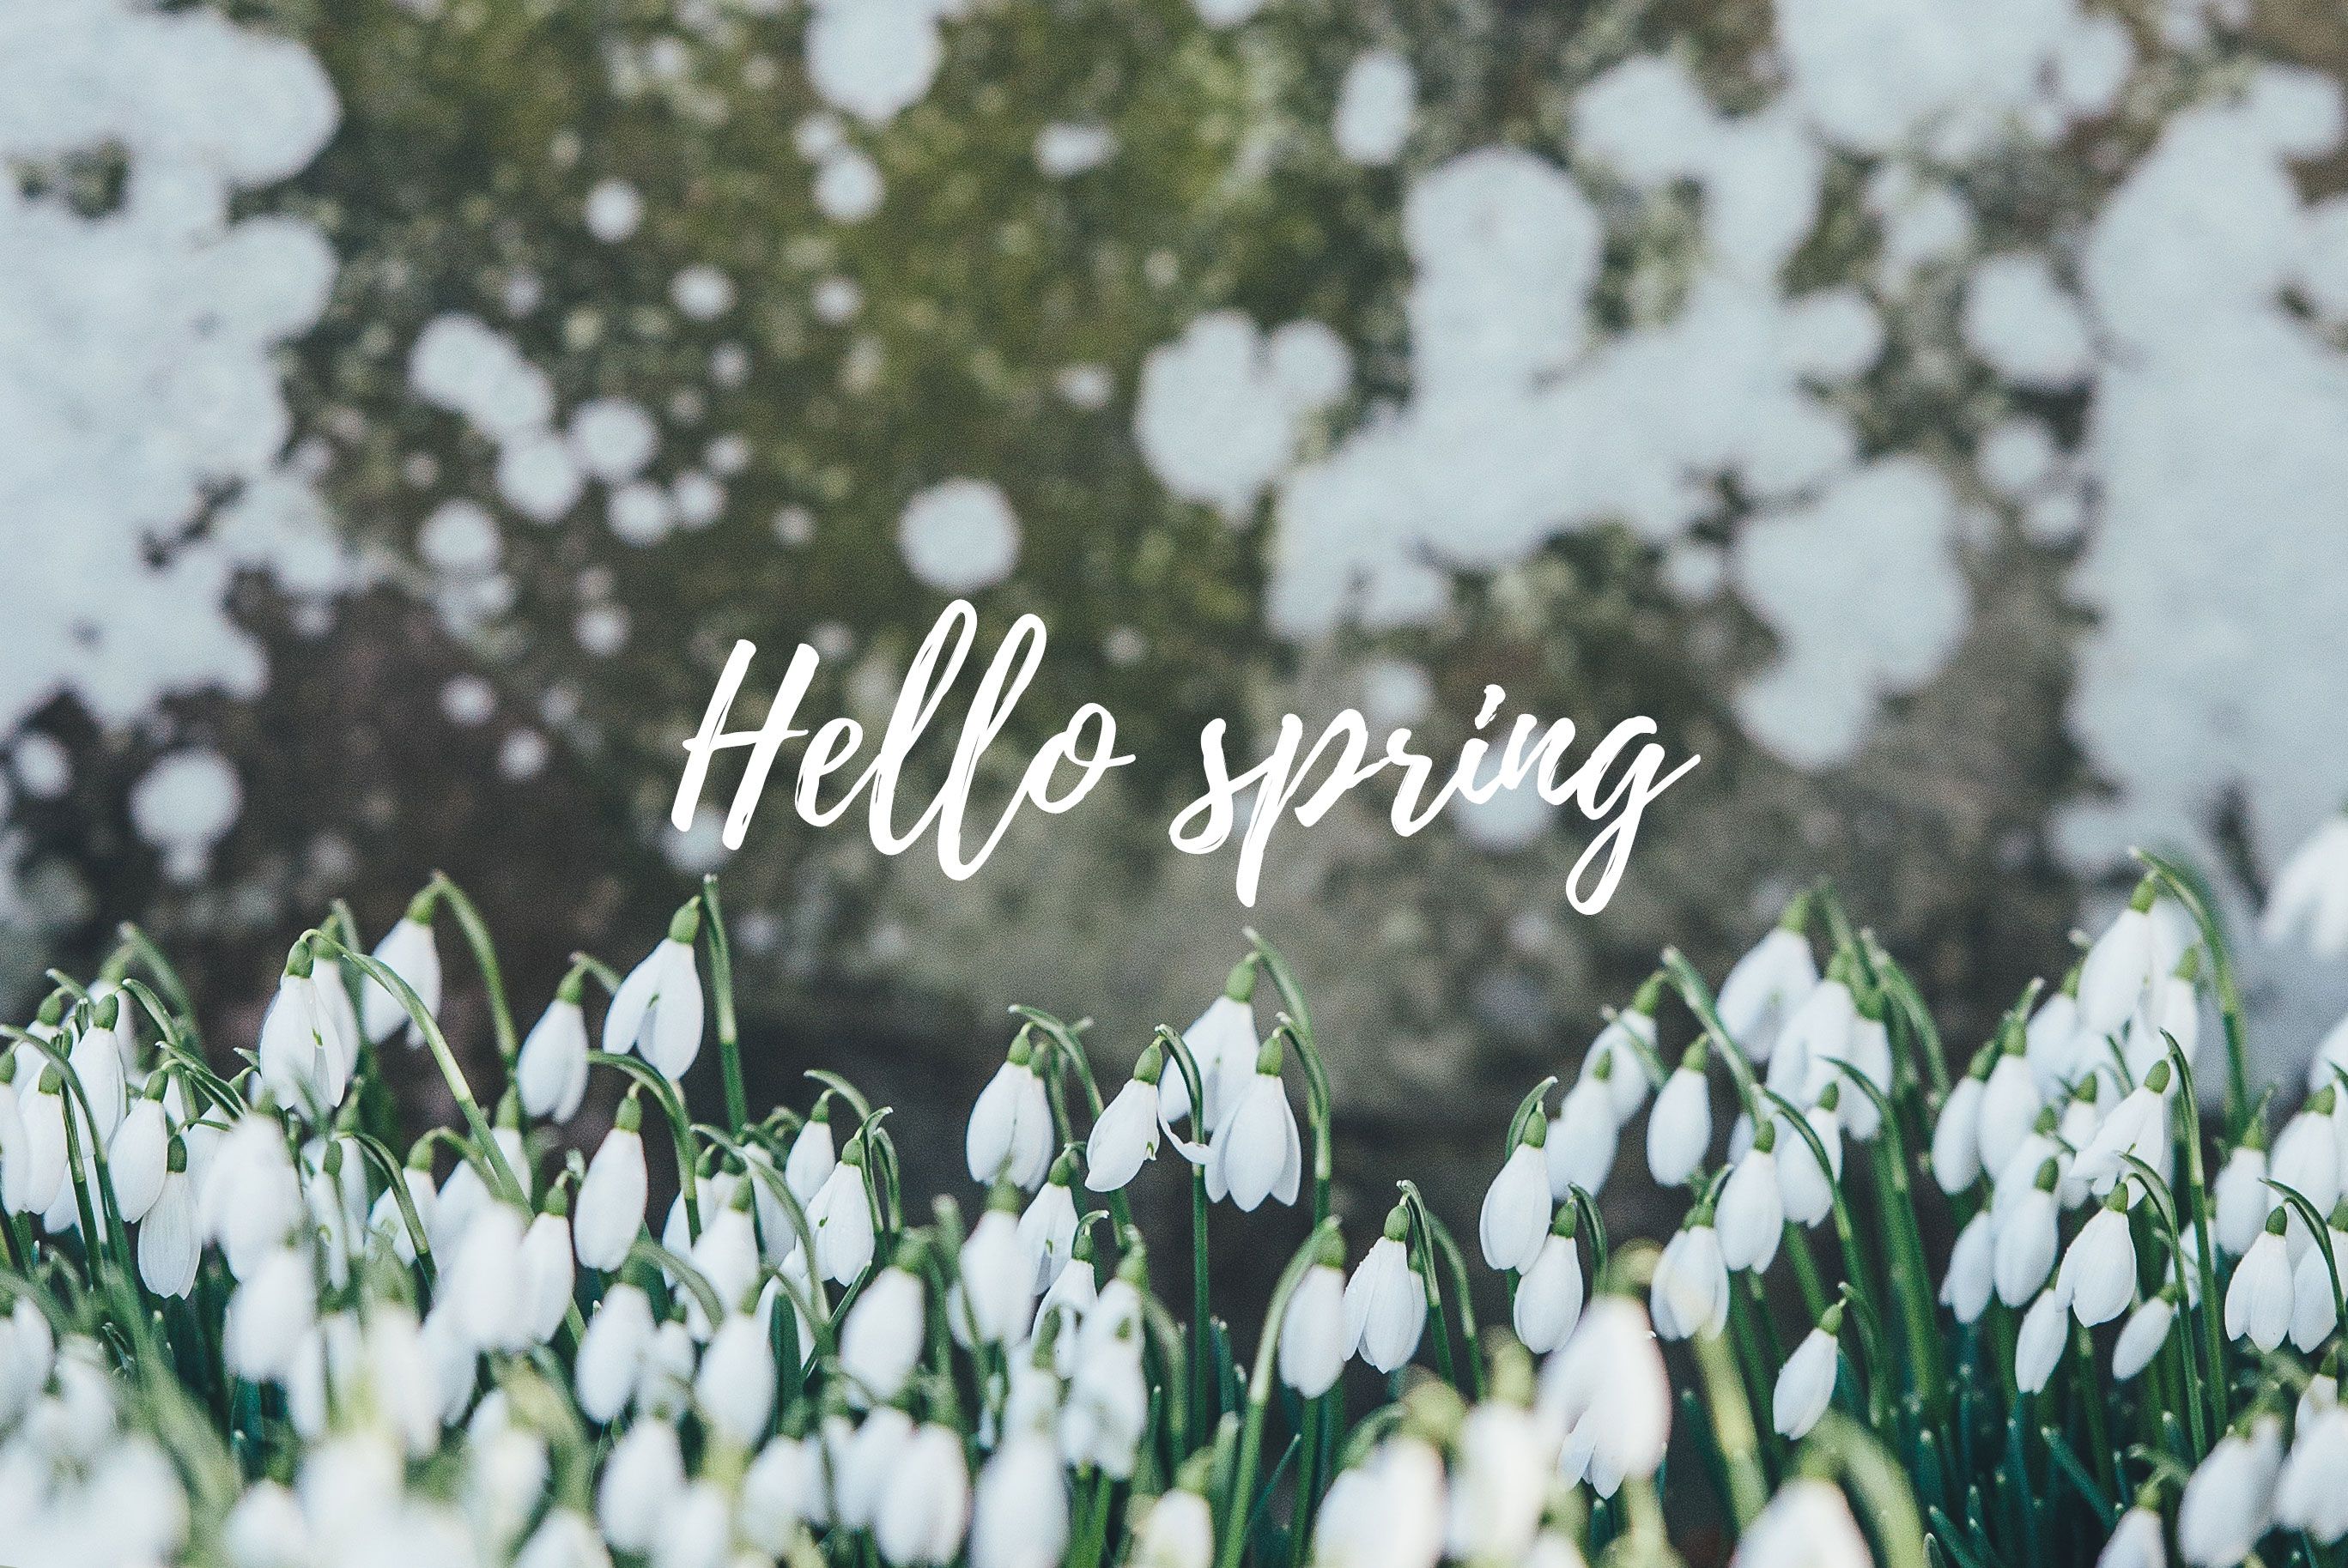 Free Spring Desktop Image. Sonrisa Studio. Spring desktop wallpaper, Spring wallpaper, Hello spring wallpaper